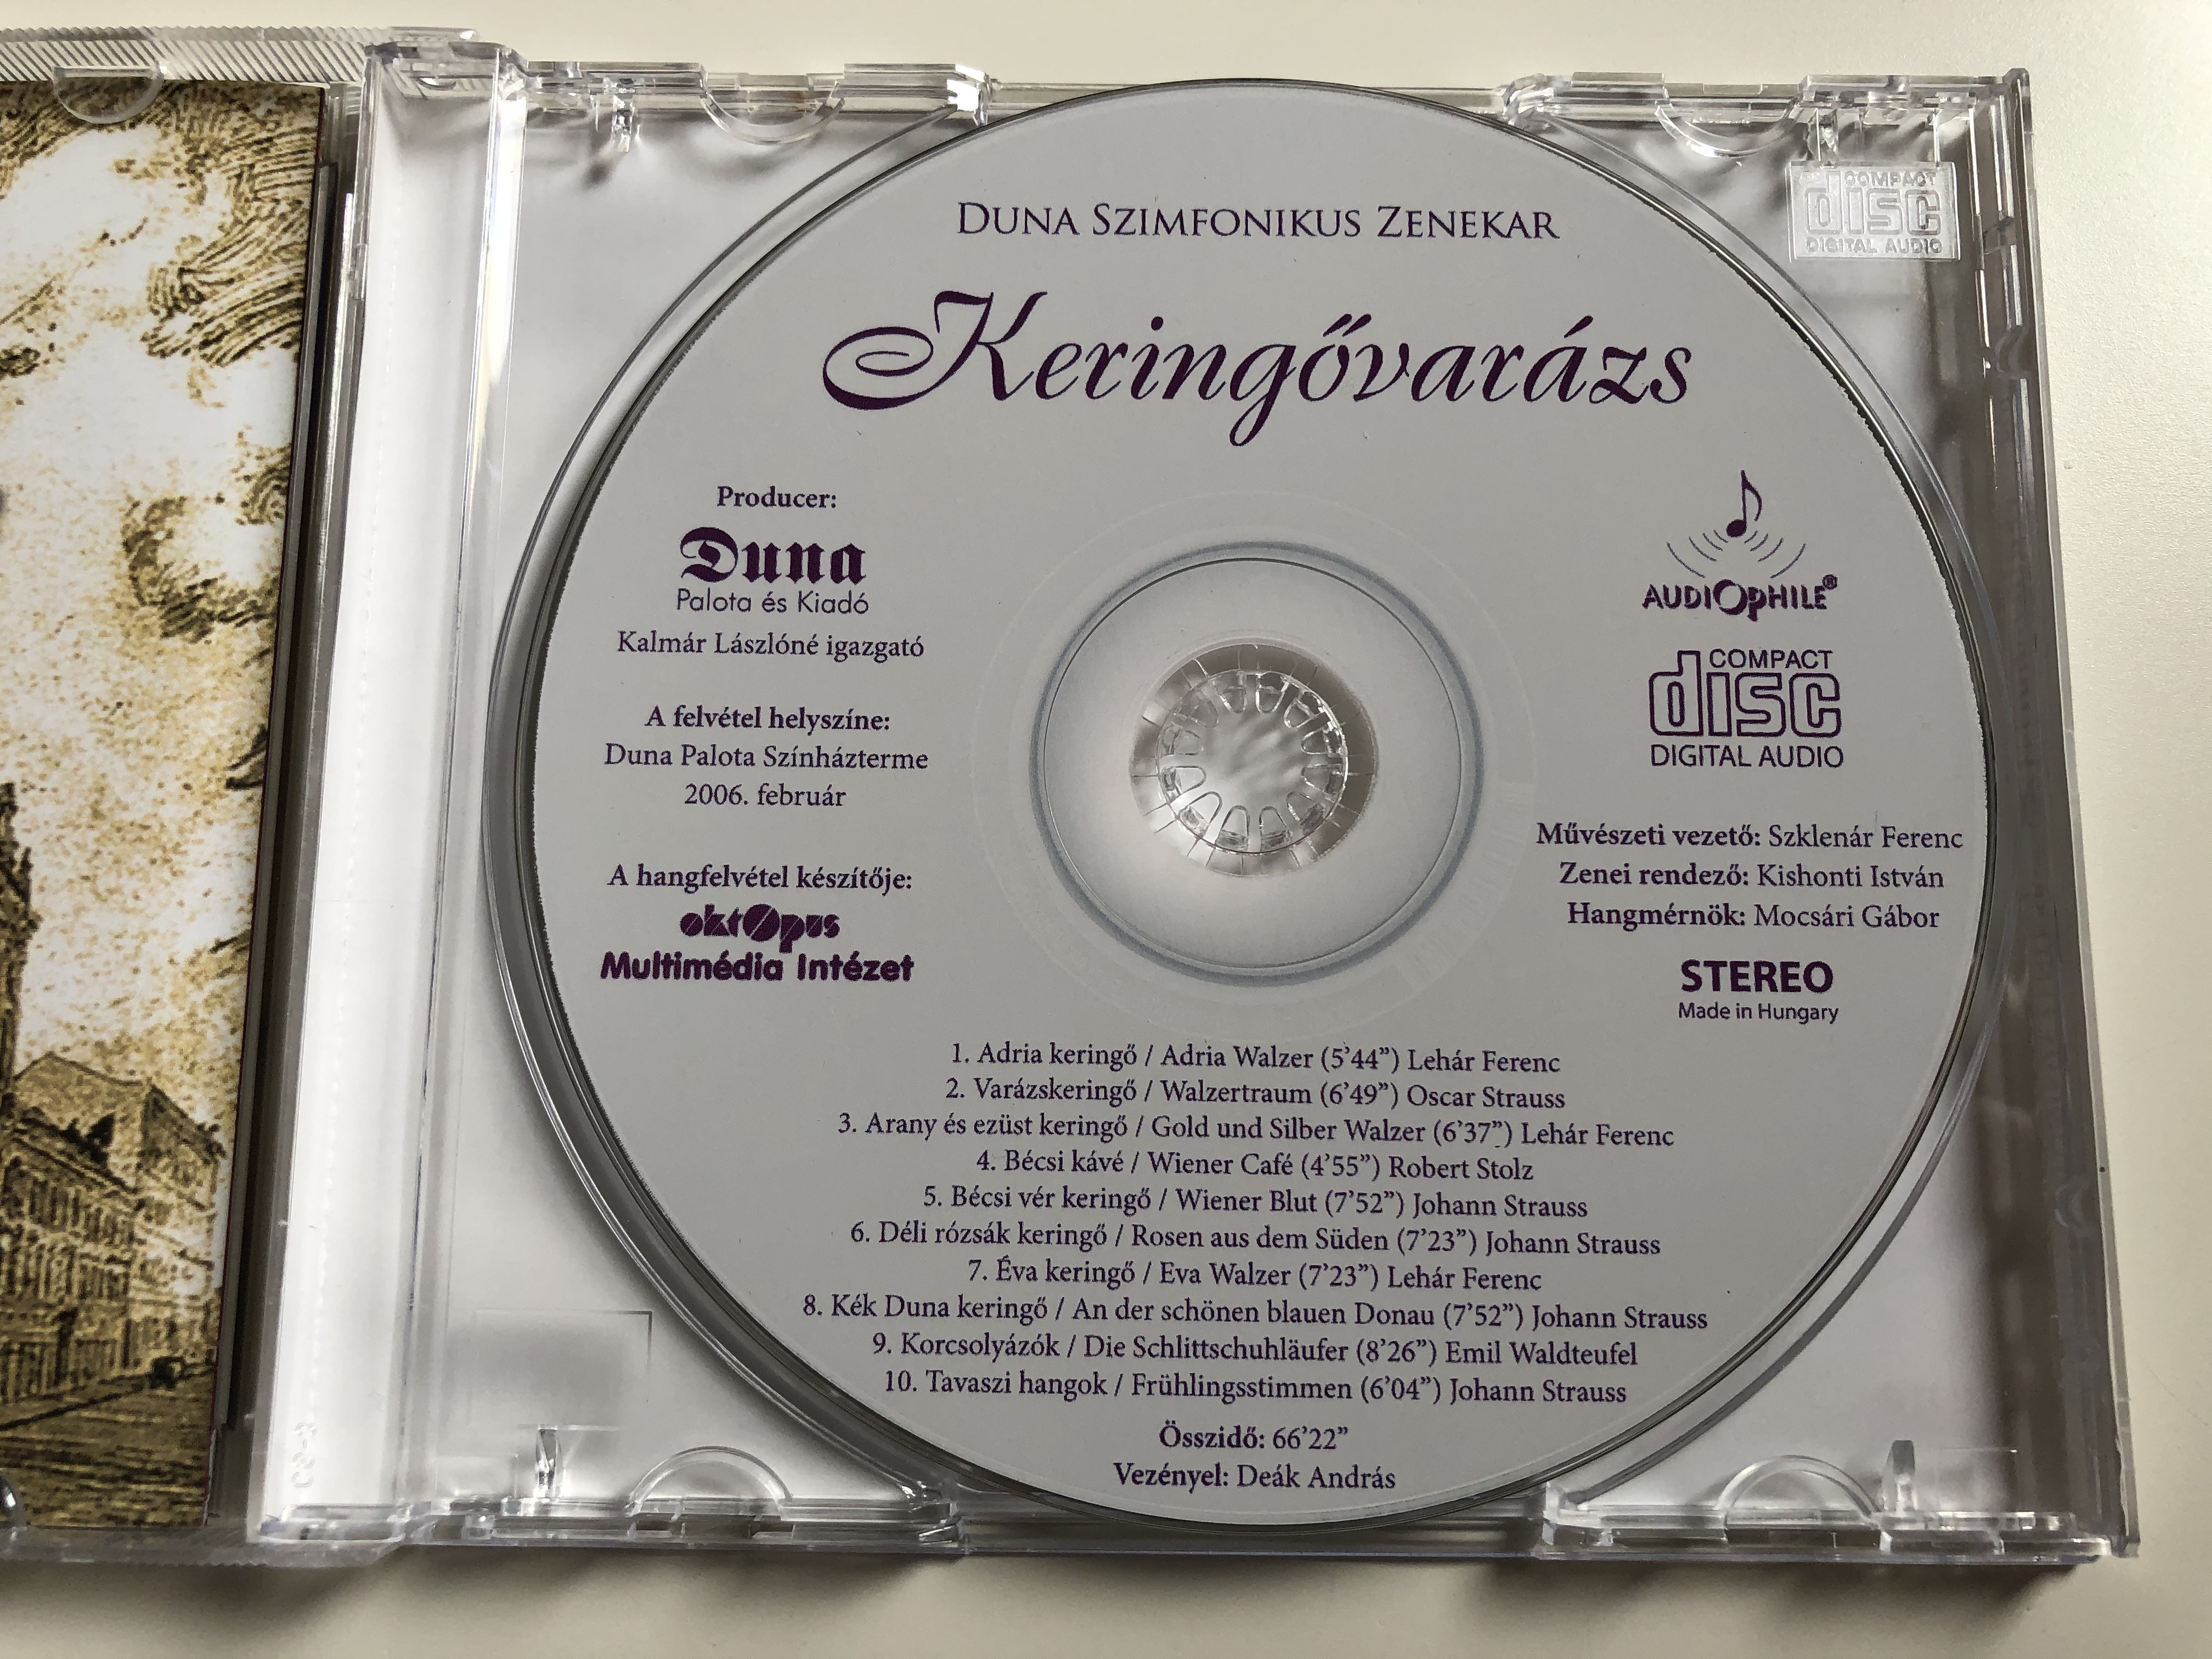 keringovarazs-duna-szimfonikus-zenekar-karmester-deak-andras-duna-audio-cd-2006-stereo-5999883004005-4-.jpg